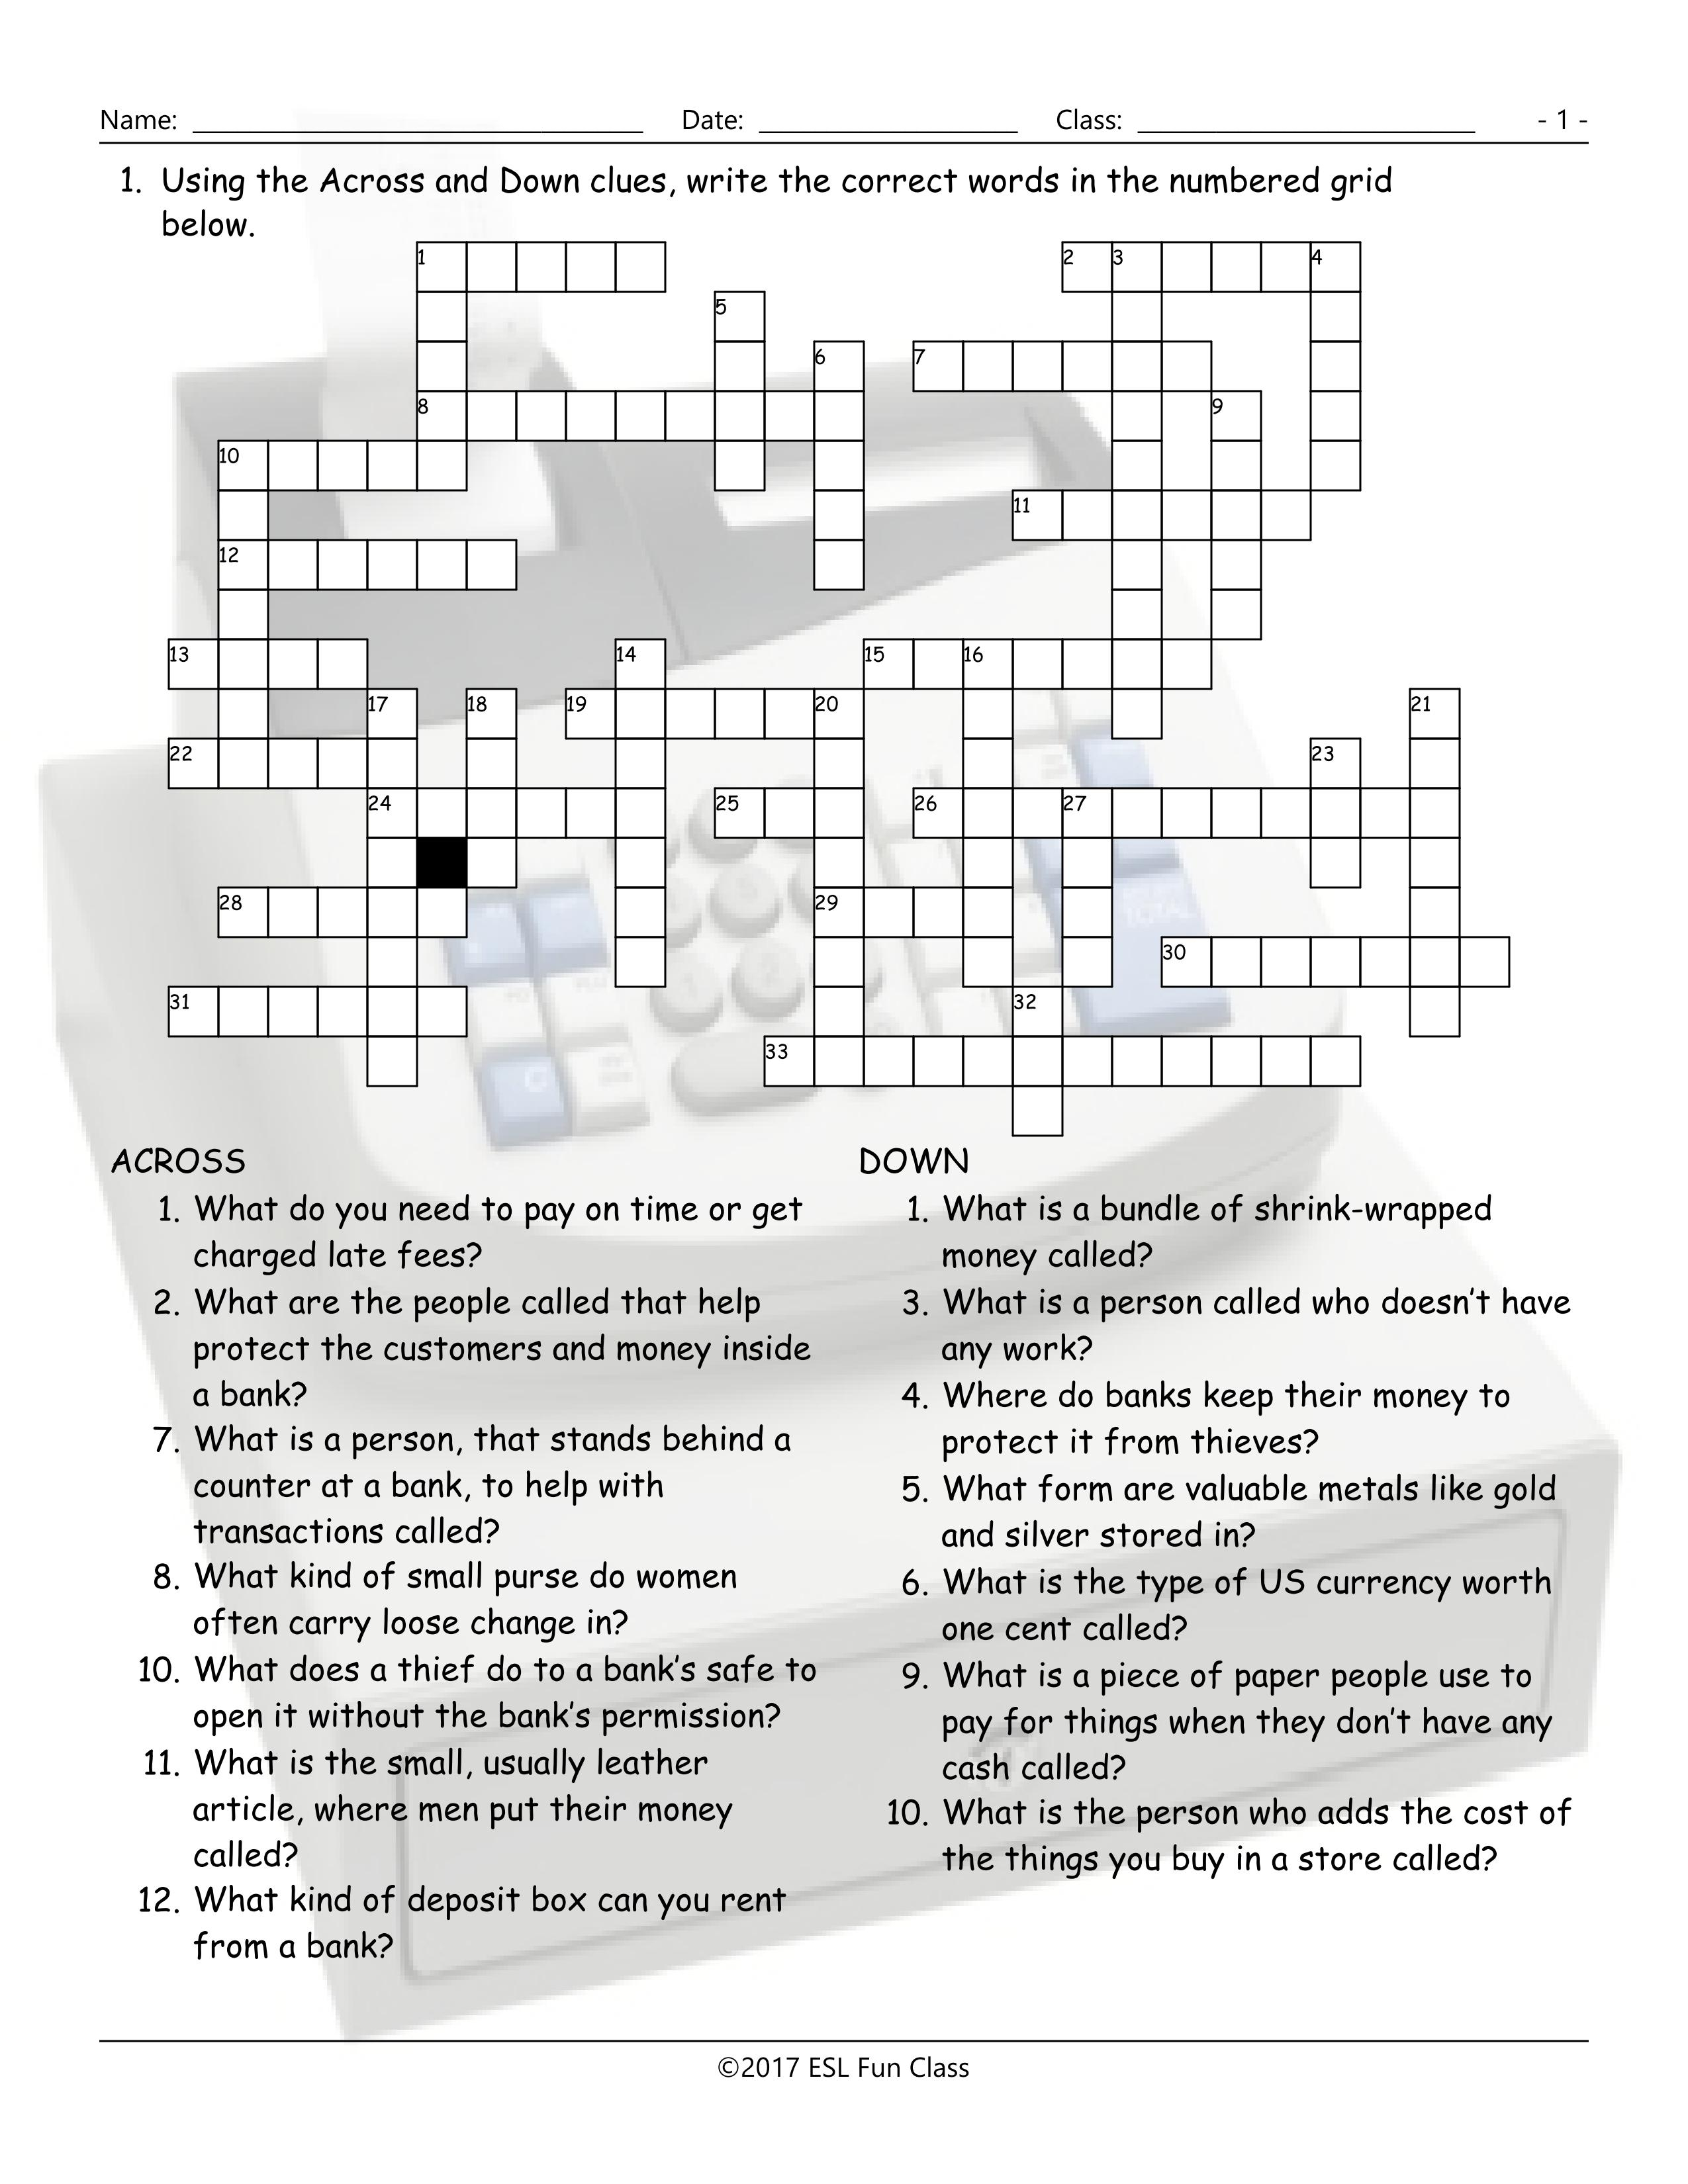 Money-Banking Crossword Puzzle Worksheet-Esl Fun Games-Have Fun! - Printable Esl Crossword Worksheets